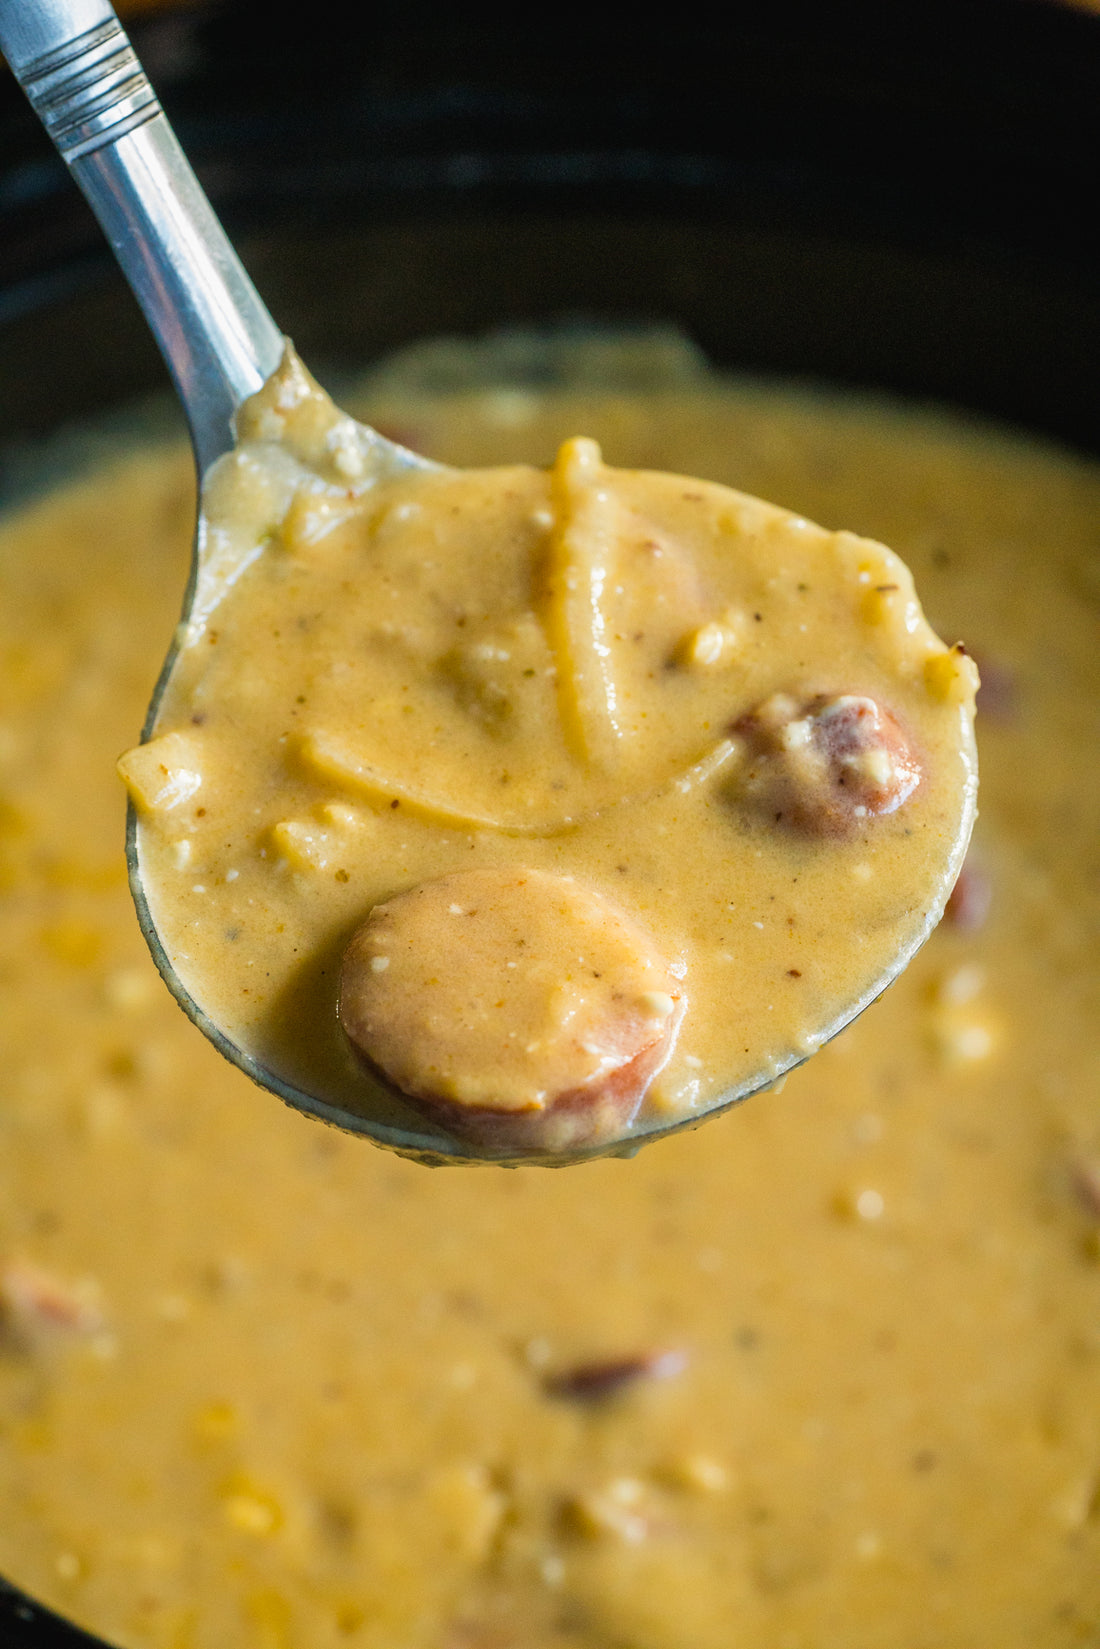 Slow Cooker Cajun Potato Soup||Slow Cooker Cajun Potato Soup||Slow Cooker Cajun Potato Soup||Slow Cooker Cajun Potato Soup||Slow Cooker Cajun Potato Soup